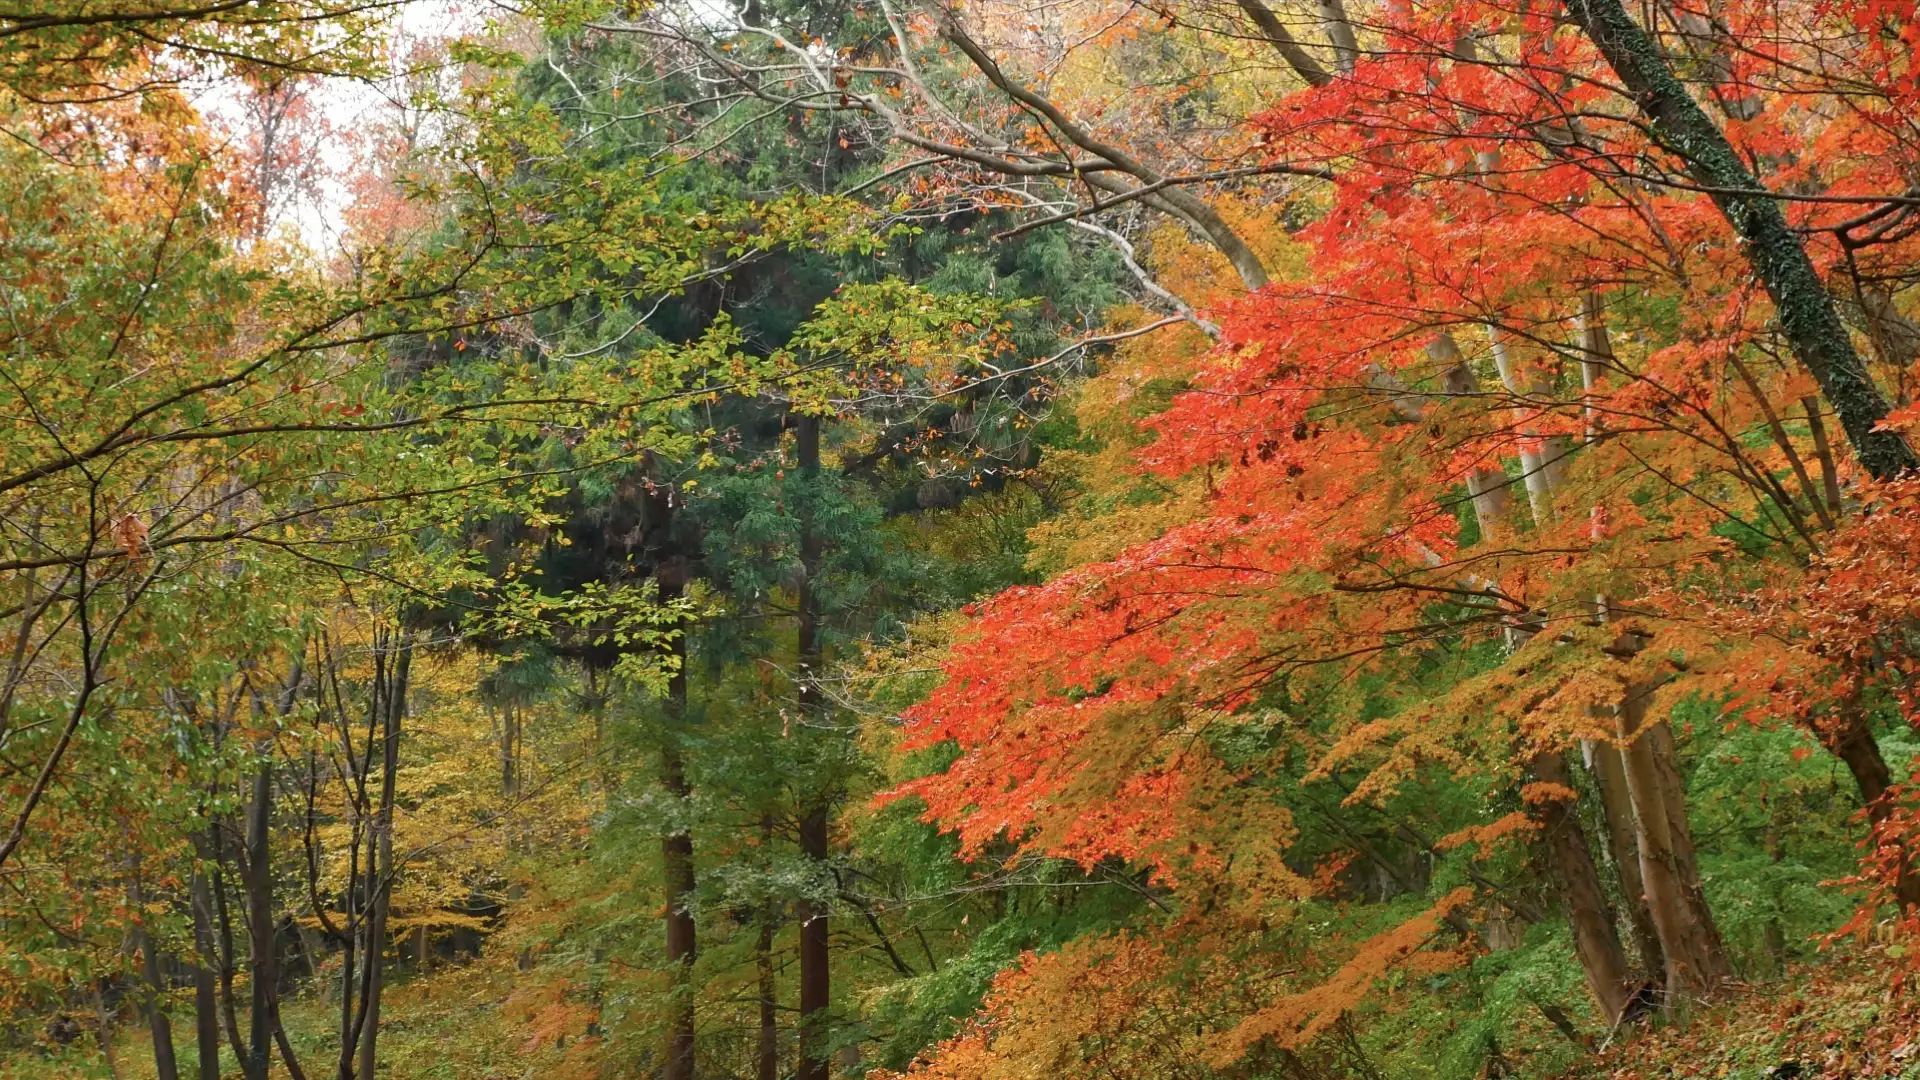 秋色風景・紅葉の世界【RELAX WORLD】